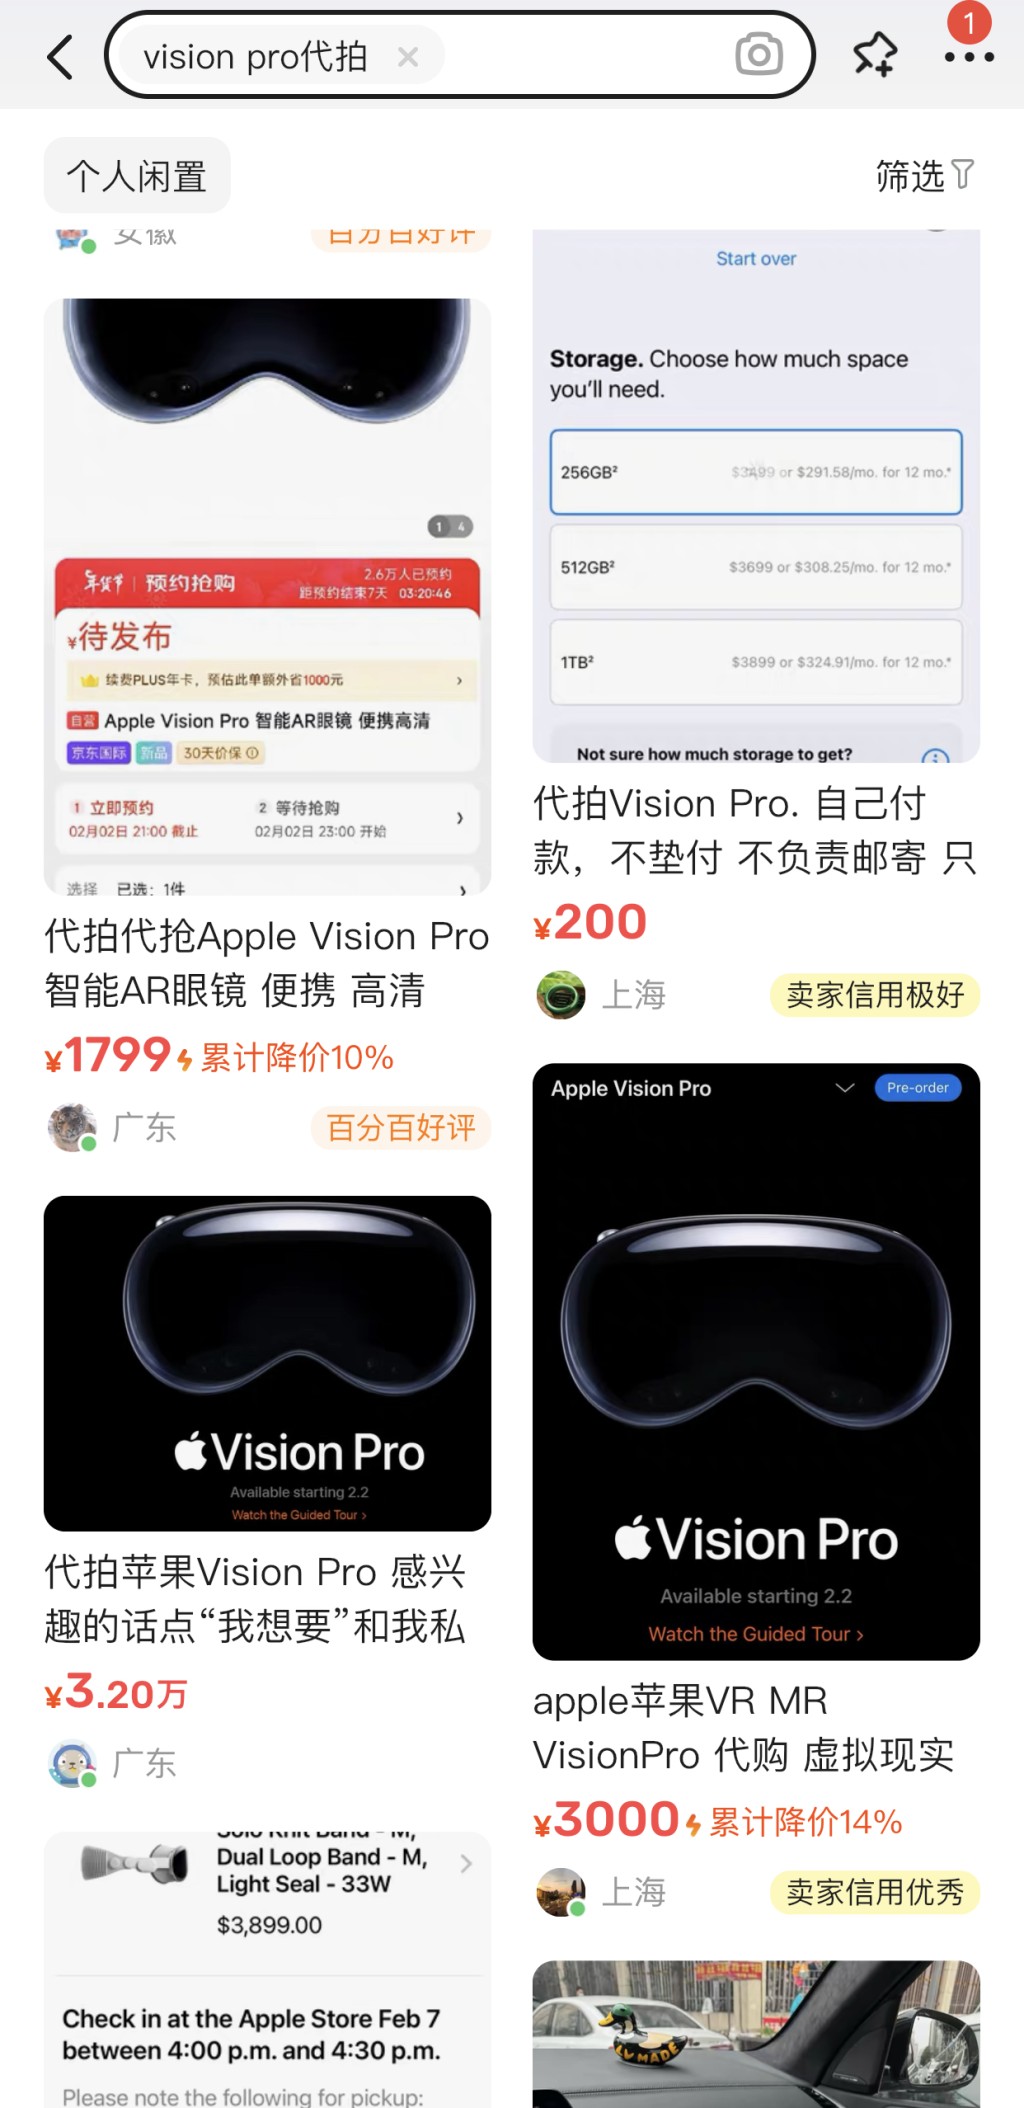 Vision Pro还有代拍和指导下单的服务业务，卖家宣称可以帮助用户原价拿下苹果Vision Pro，报价为100元至1,000元不等。店主承诺全程指导下单和邮寄事宜，直到顾客拿到产品为止。